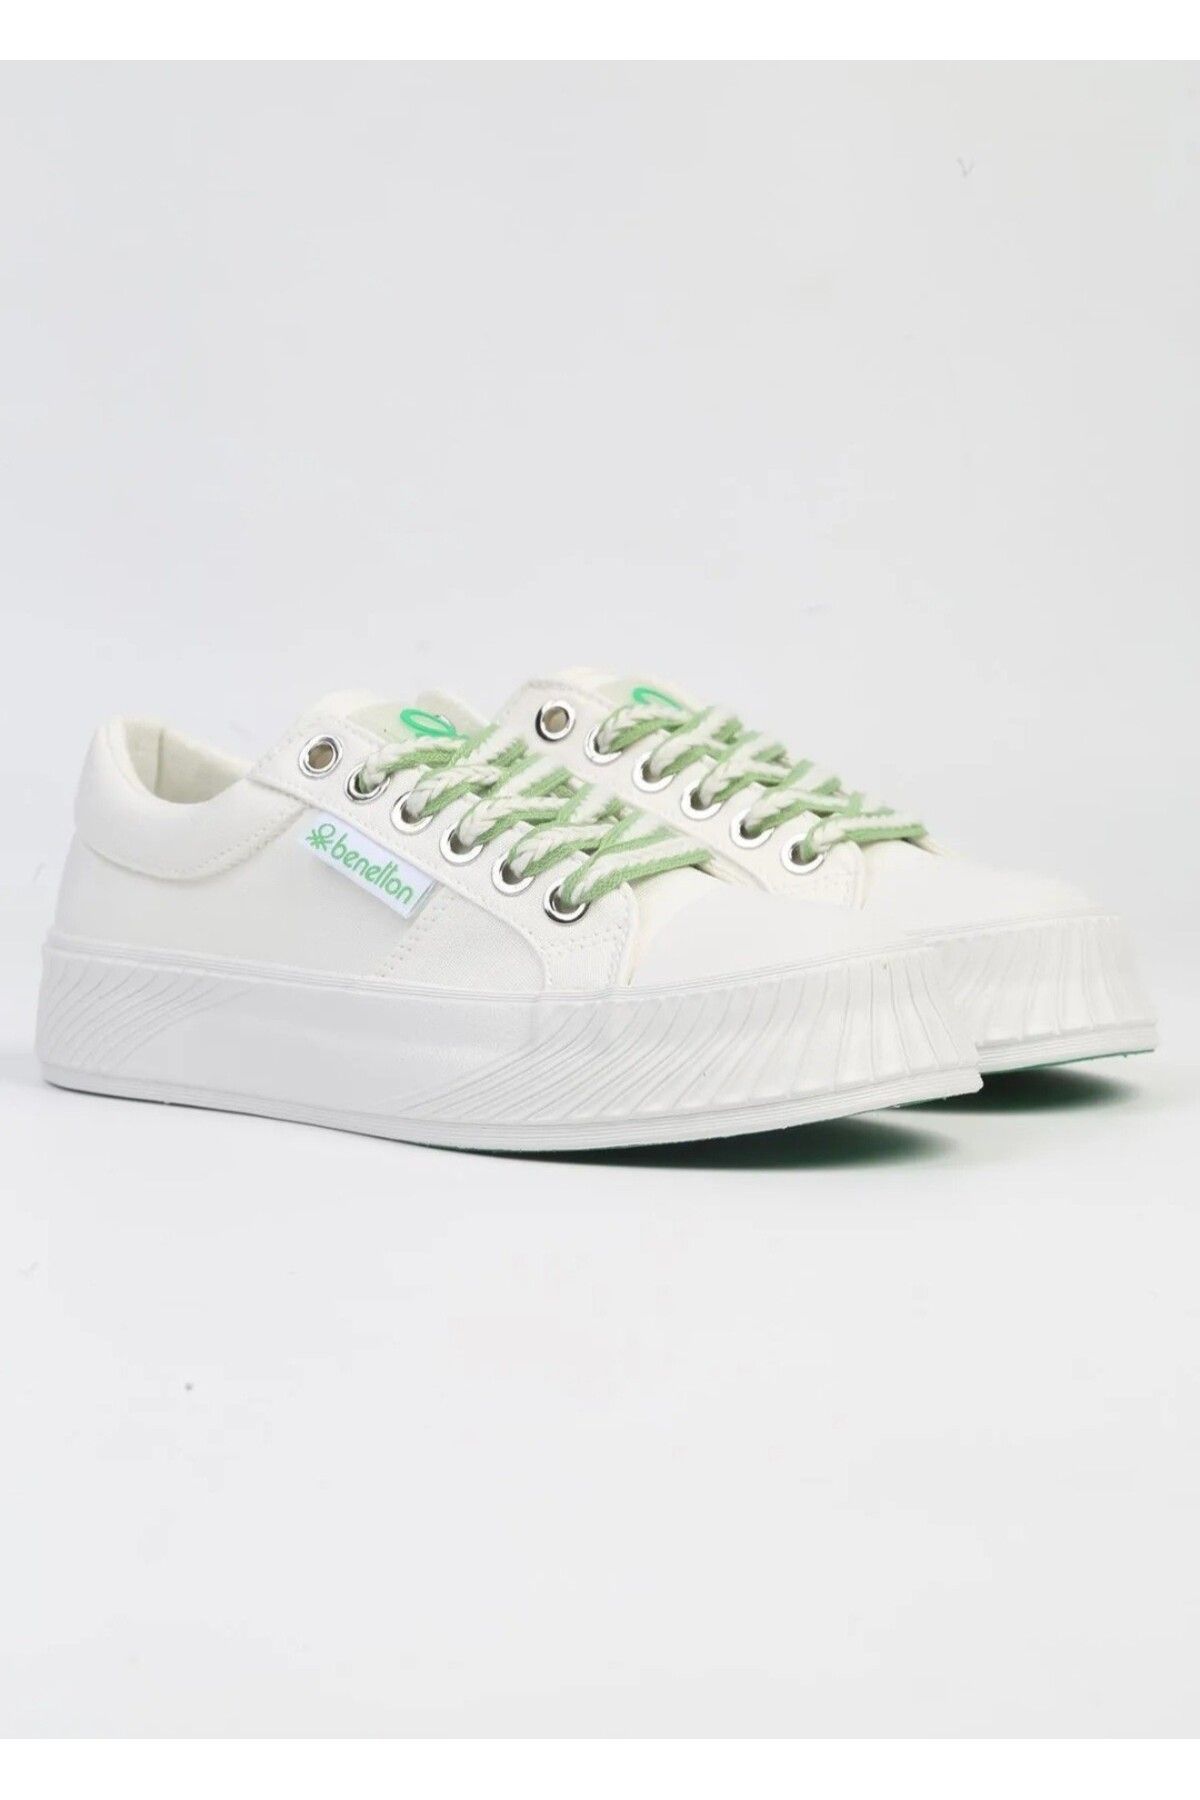 United Colors of Benetton Benetton 10097 Beyaz Kadın Sneaker Spor Ayakkabı